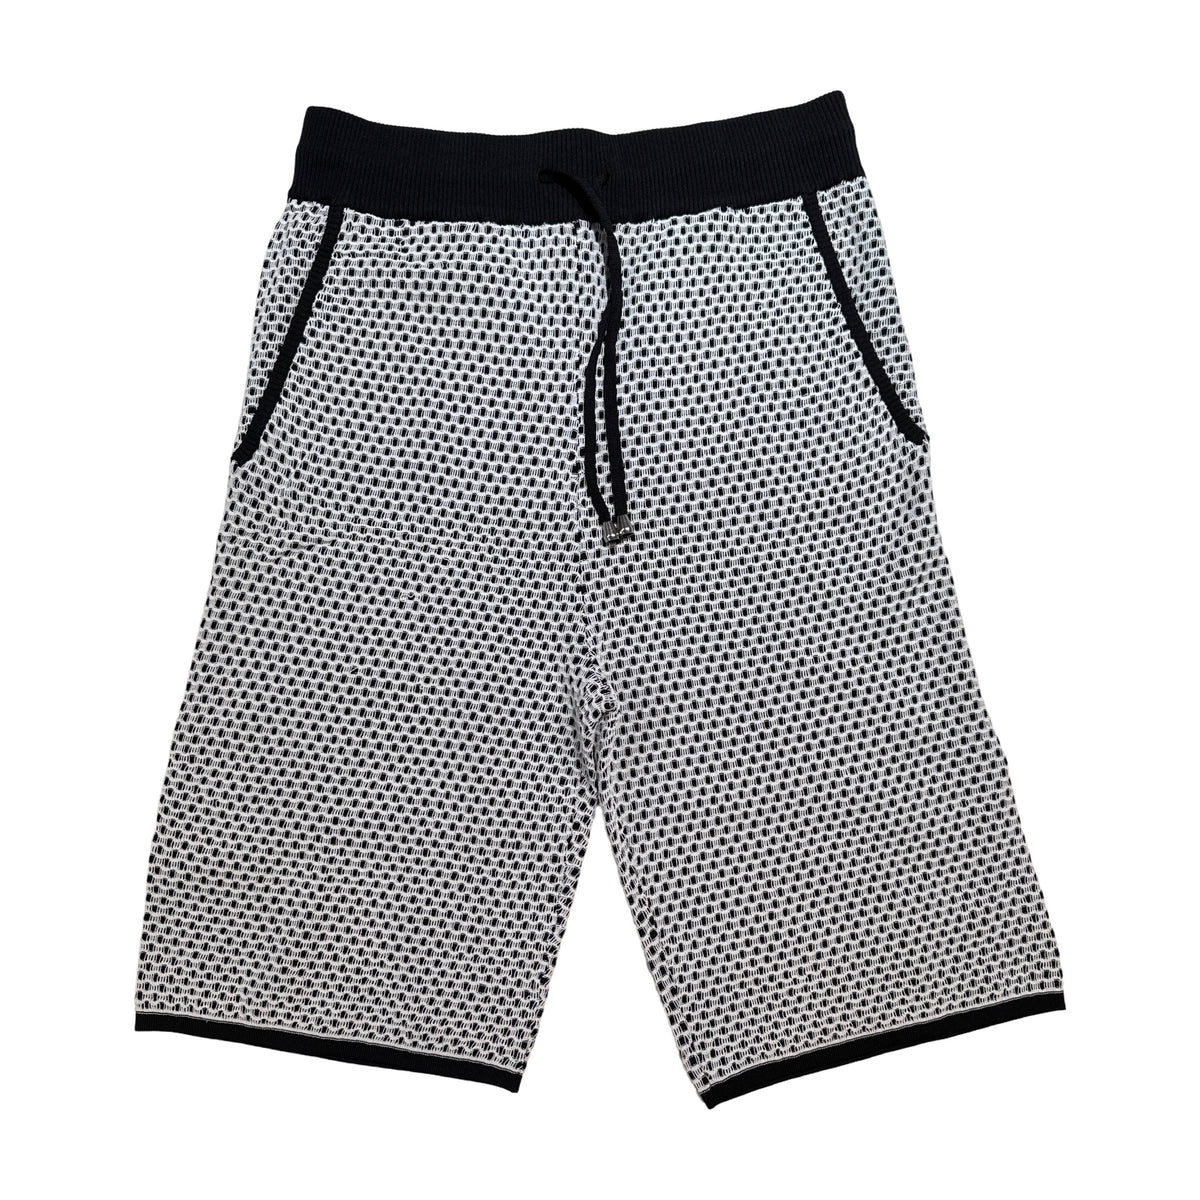 Prestige Gray Lace Ribs Knit Shorts & Shirt Set - Dudes Boutique